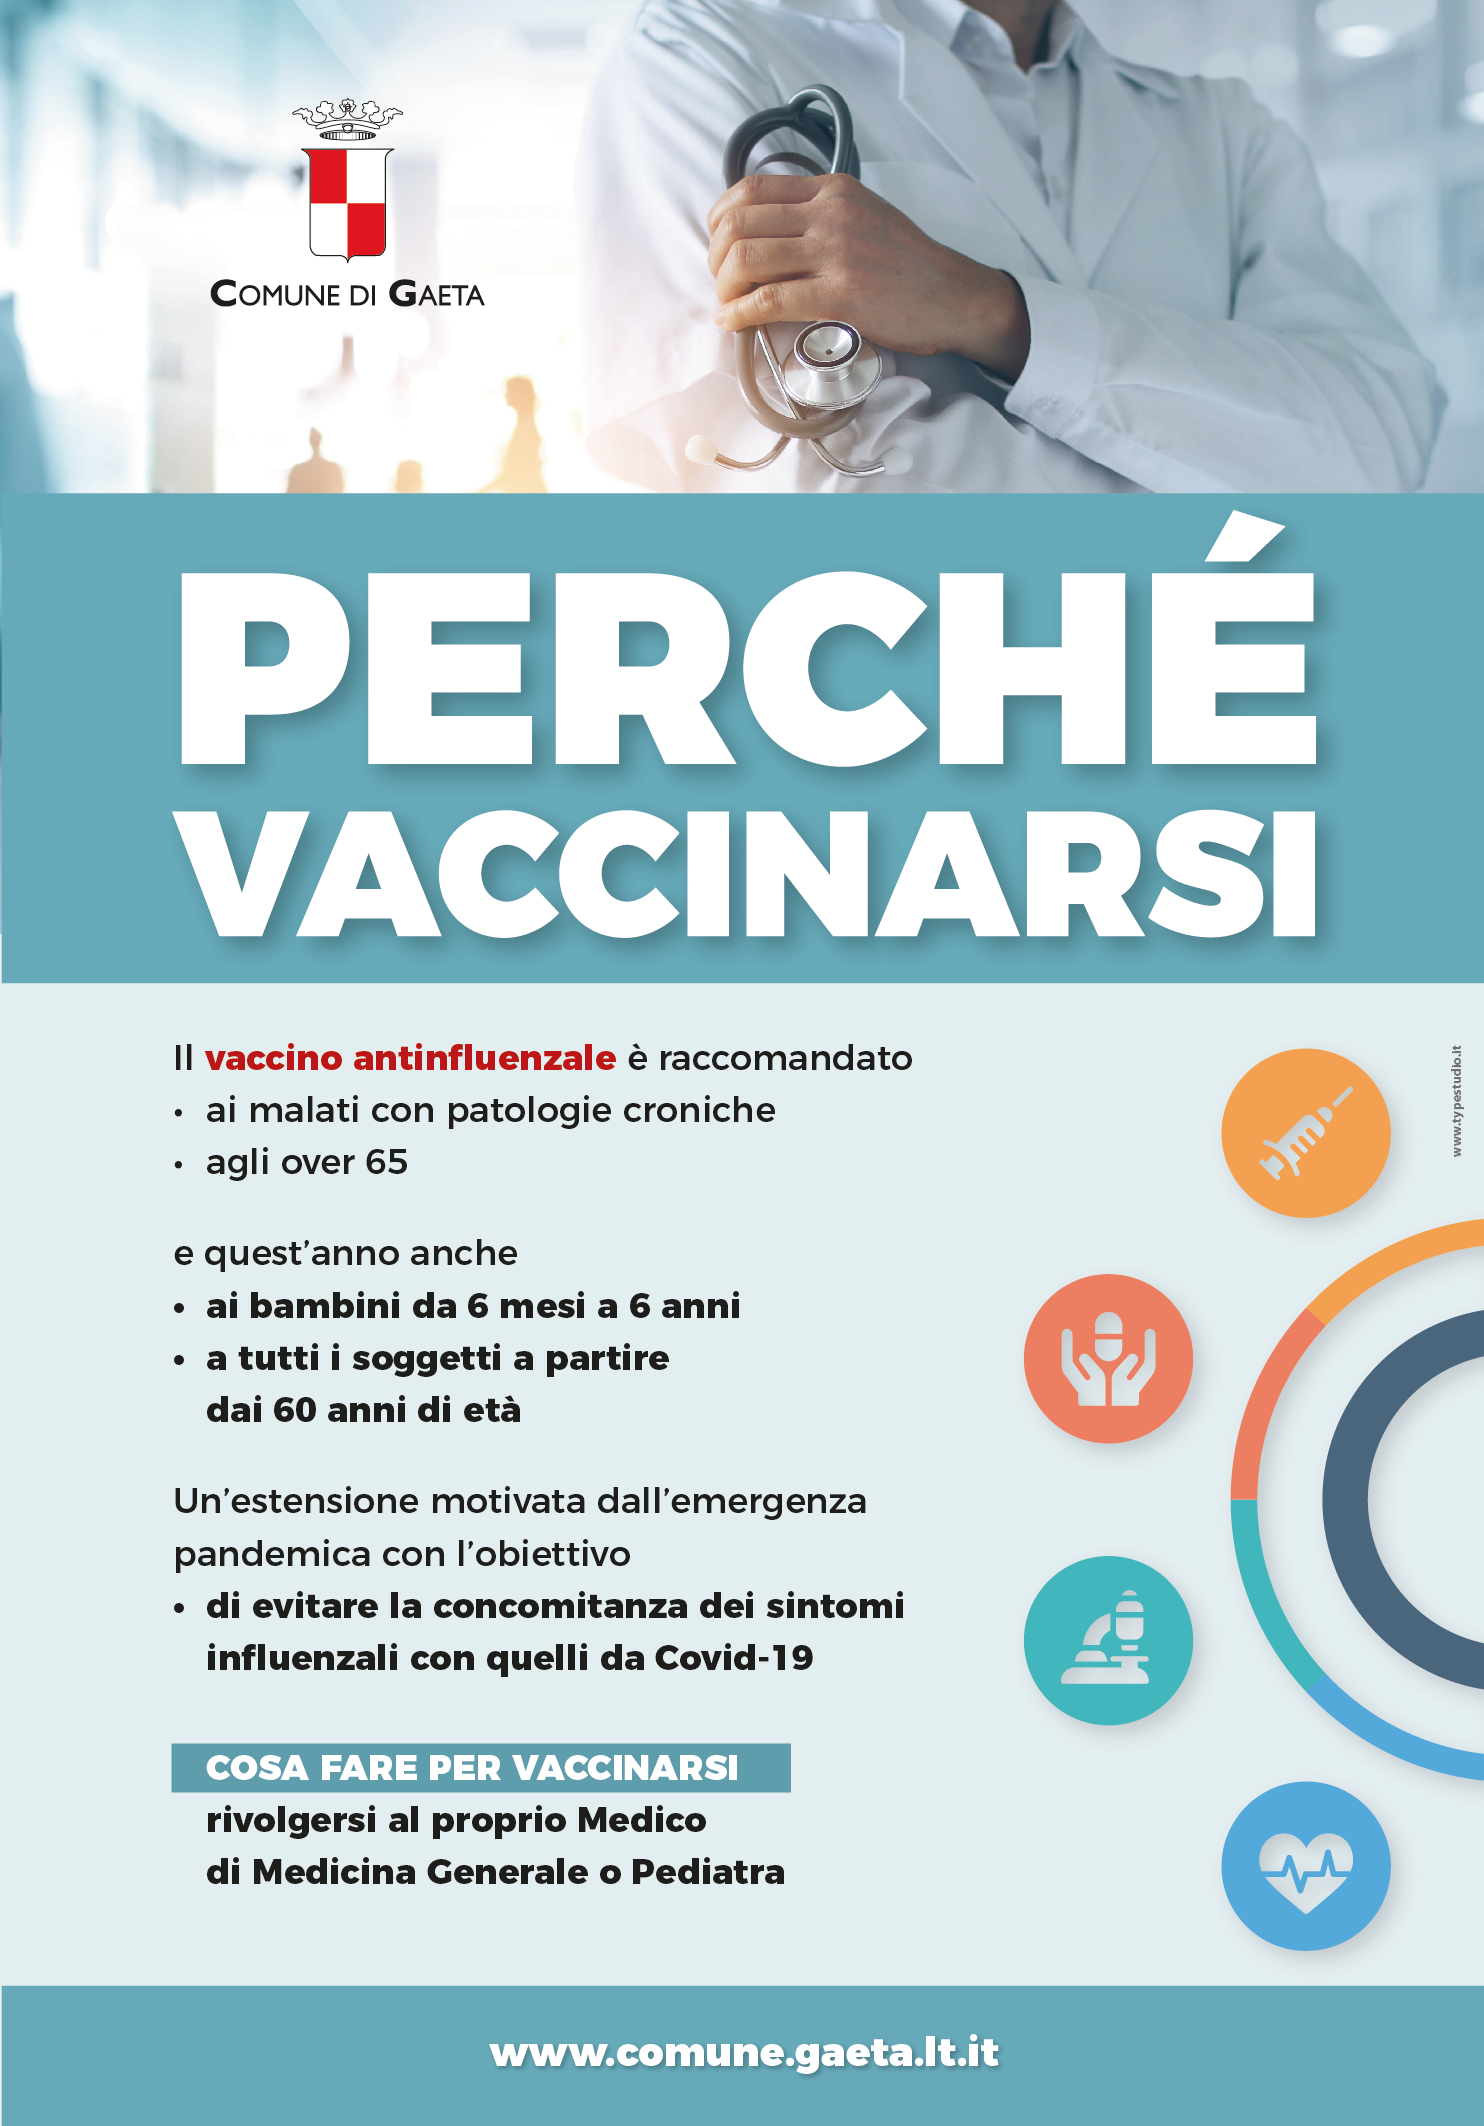 Vaccino antinfluenzale, la campagna di sensibilizzazione promossa dal Comune di Gaeta.